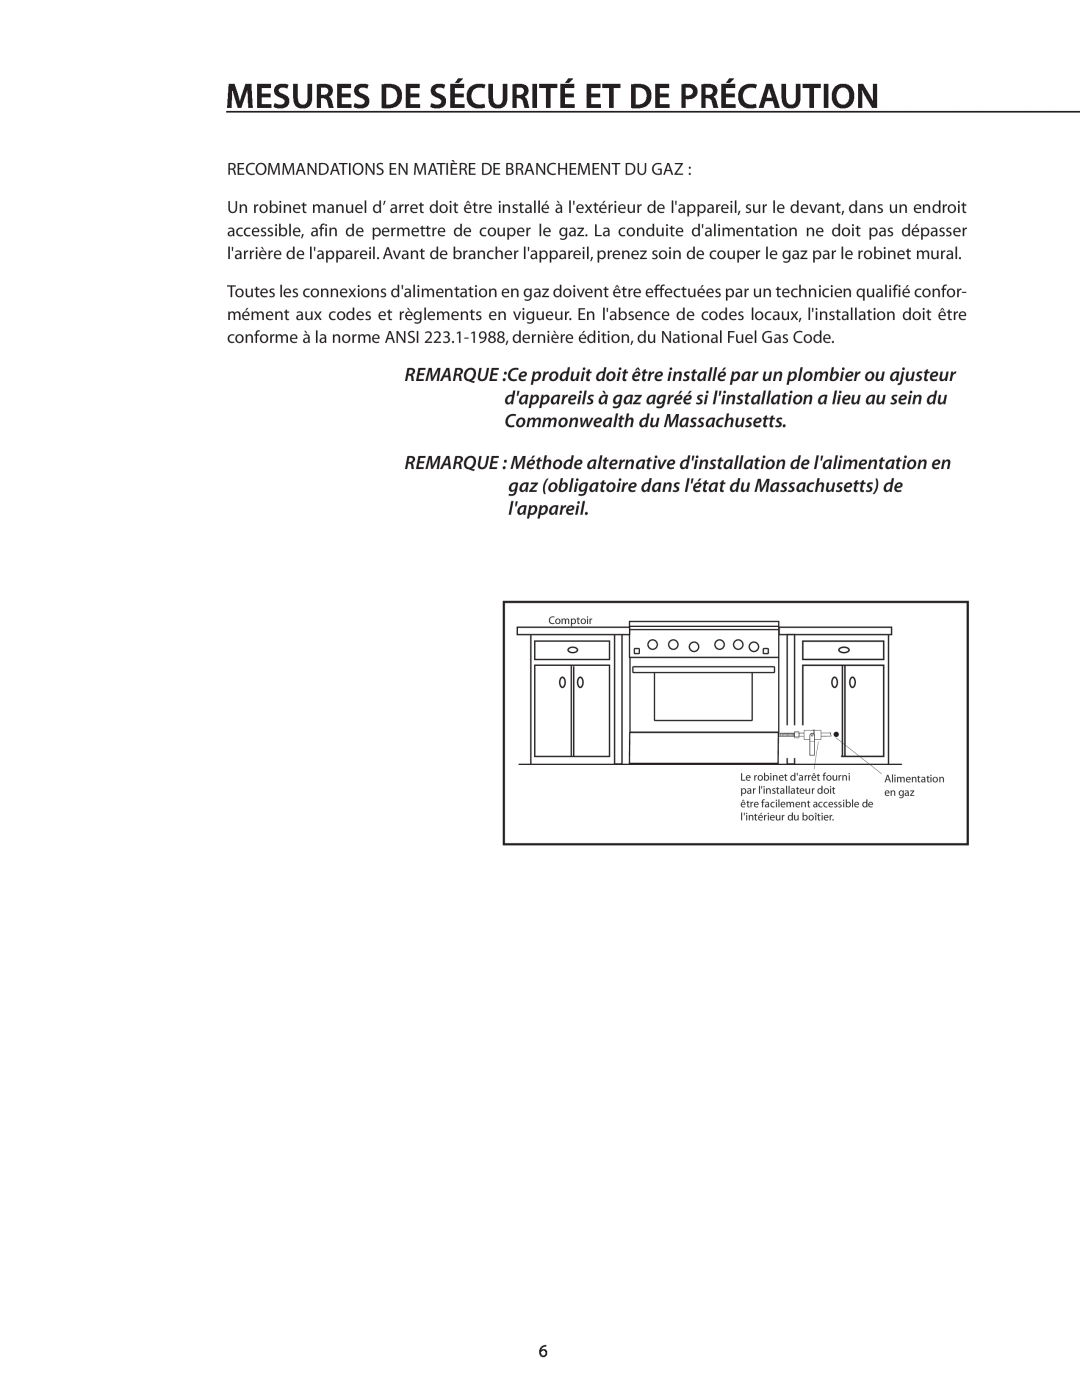 DCS RDS-305 manual Mesures De Sécurité Et De Précaution, Recommandations En Matière De Branchement Du Gaz 